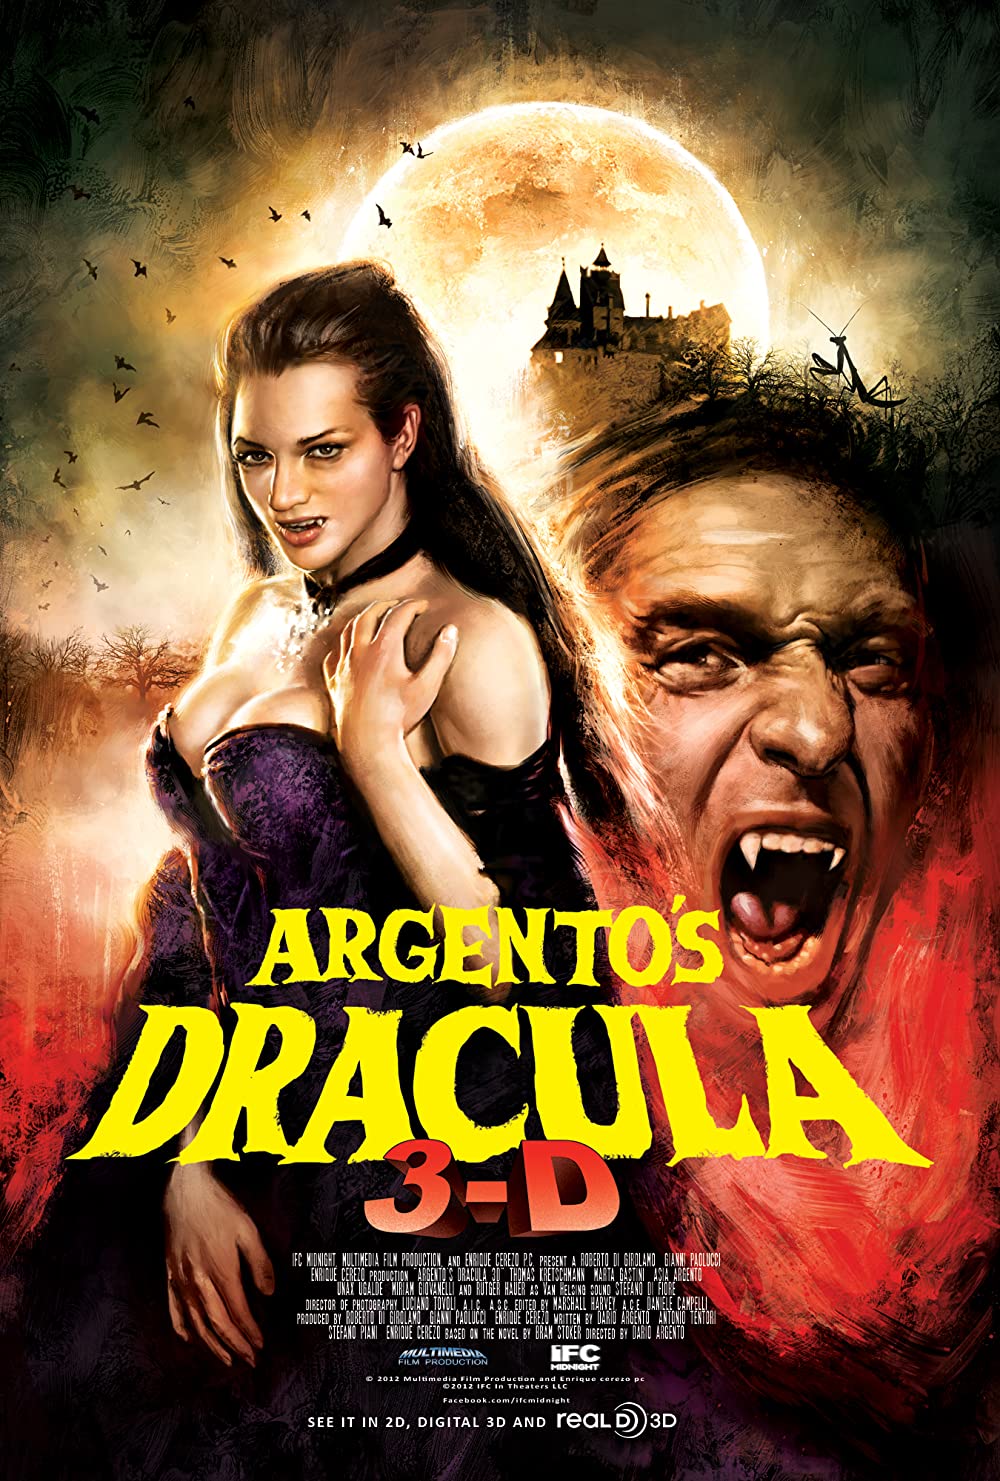 Filmbeschreibung zu Dracula 3D